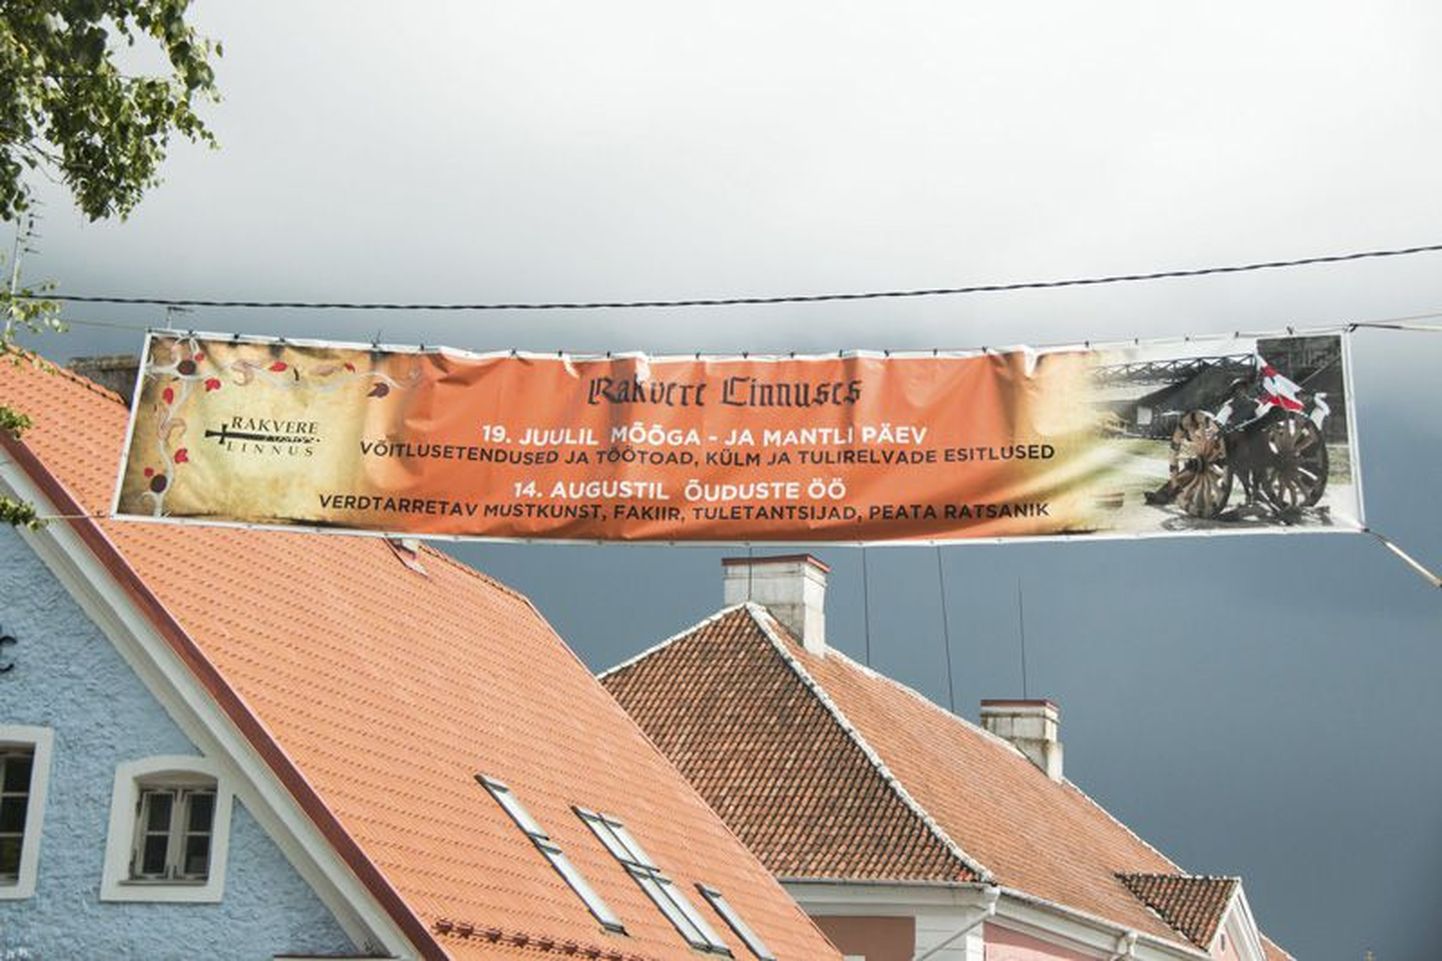 Reklaamplakat Tallinna tänaval teatab, et eelmisel pühapäeval Rakvere linnuses toimunud mõõga ja mantli päeval oli etenduste ja töötubade vahel ka külm, pärast mida esitleti tulirelvi.